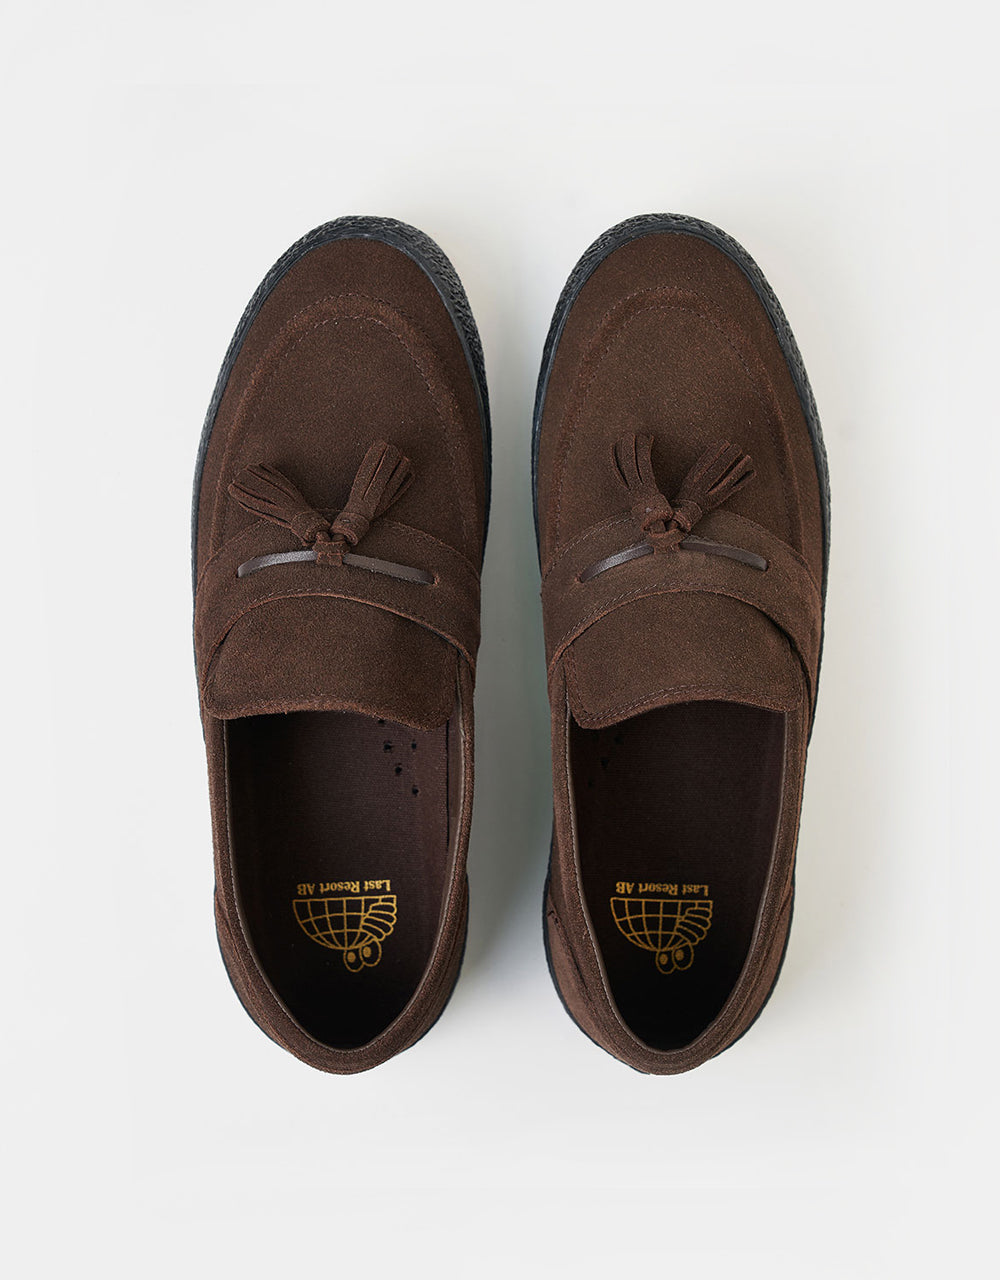 Last Resort AB VM005 Loafer Skate Shoes - Brown/Black